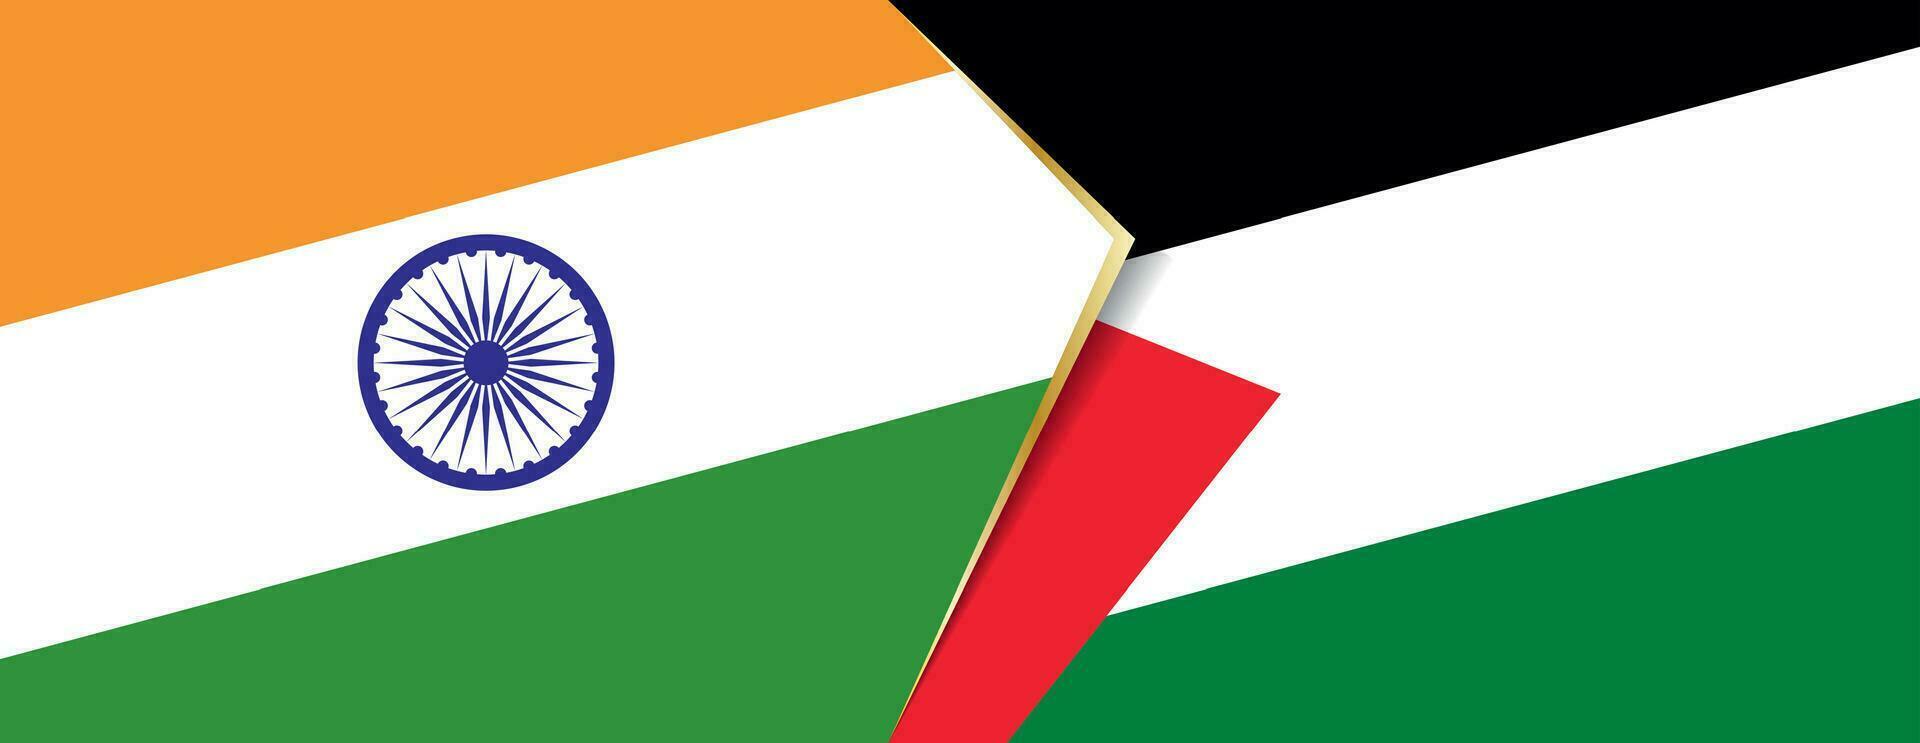 Indien och palestina flaggor, två vektor flaggor.